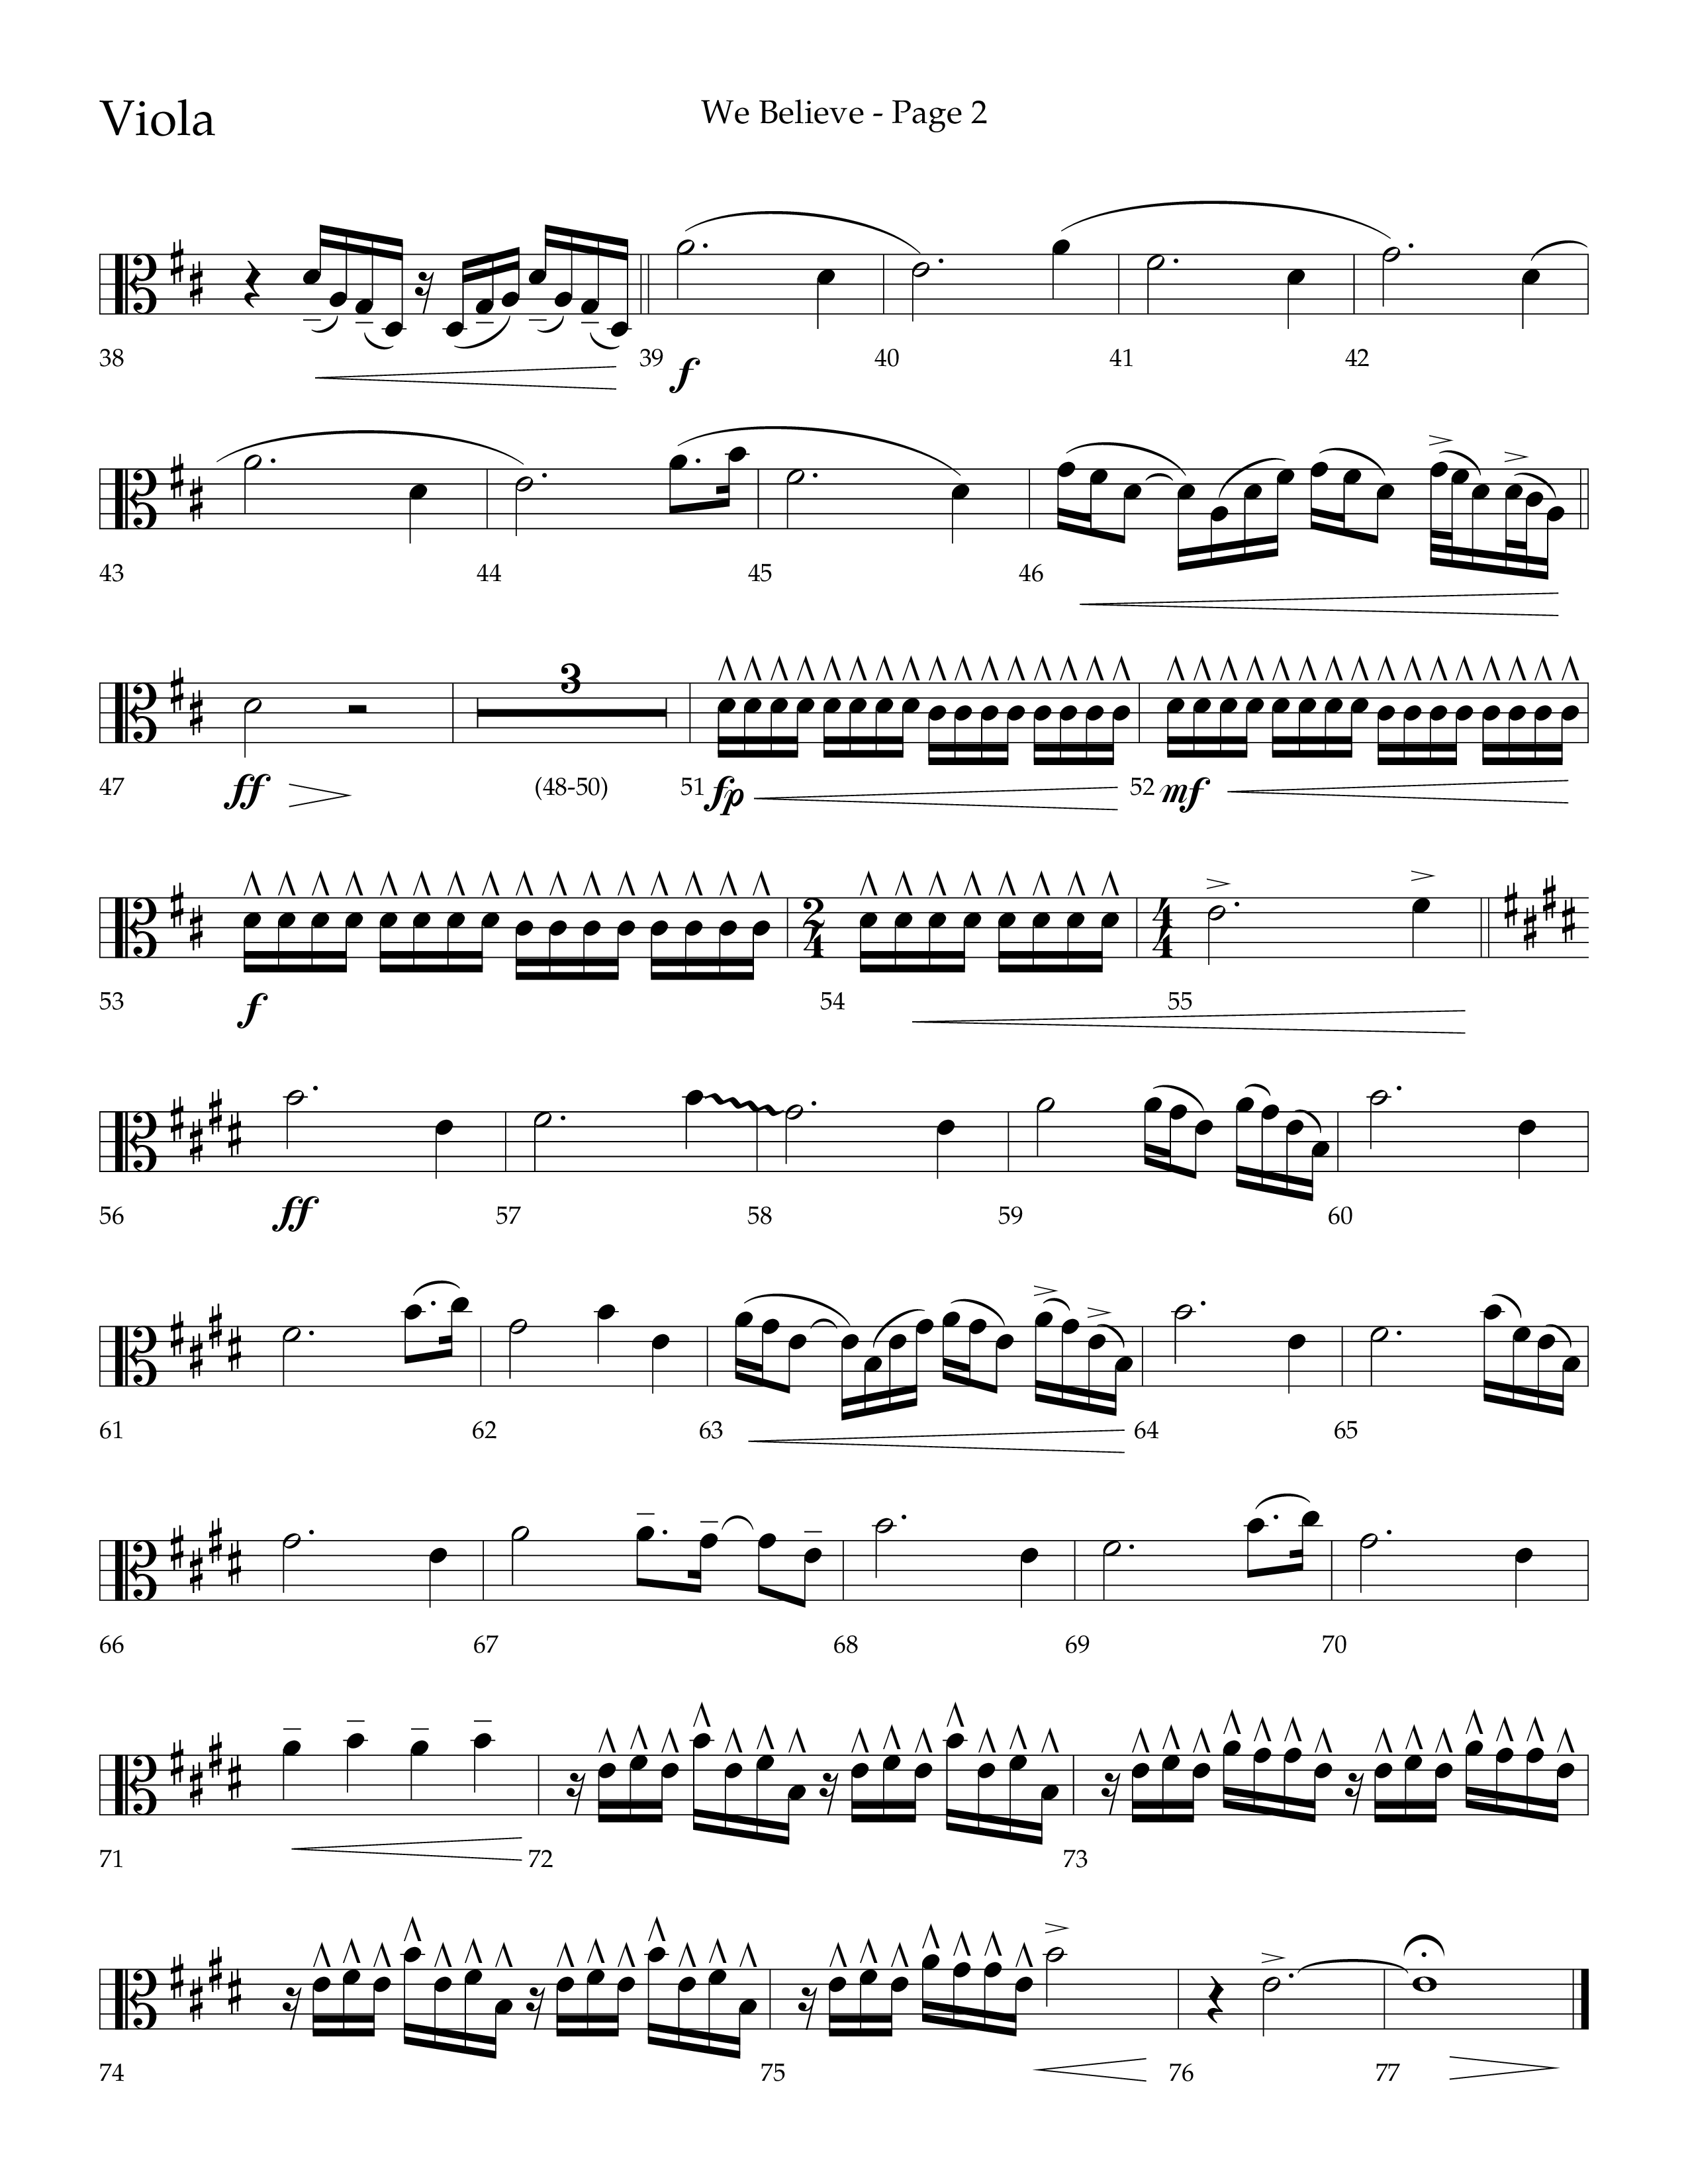 We Believe (Choral Anthem SATB) Viola (Lifeway Choral / Arr. Cliff Duren)